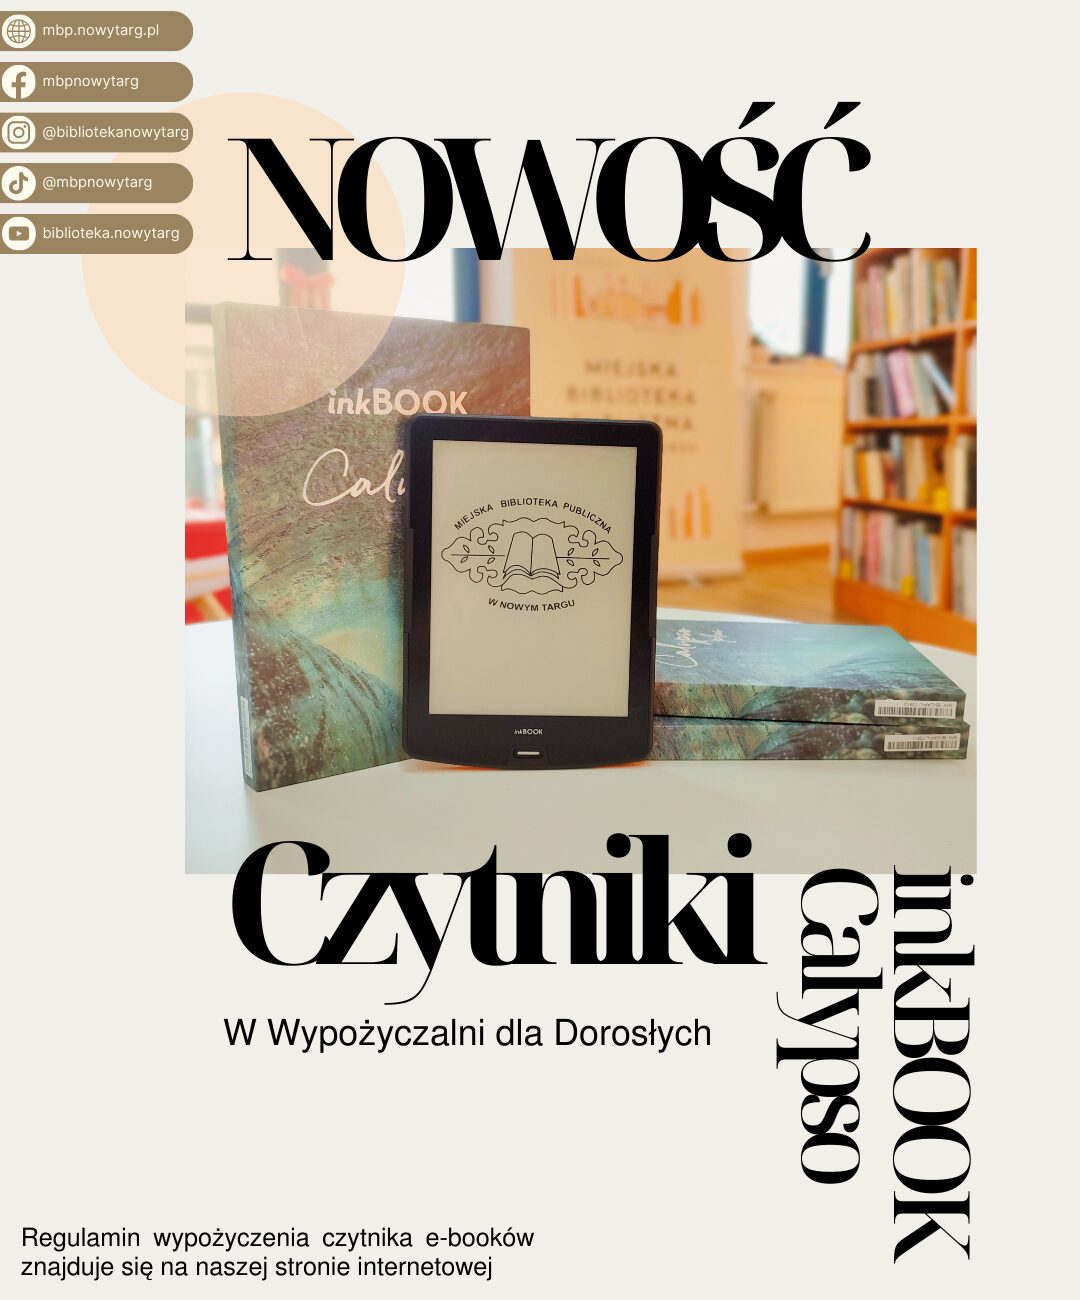 Czytniki e-booków dostępne w nowotarskiej bibliotece